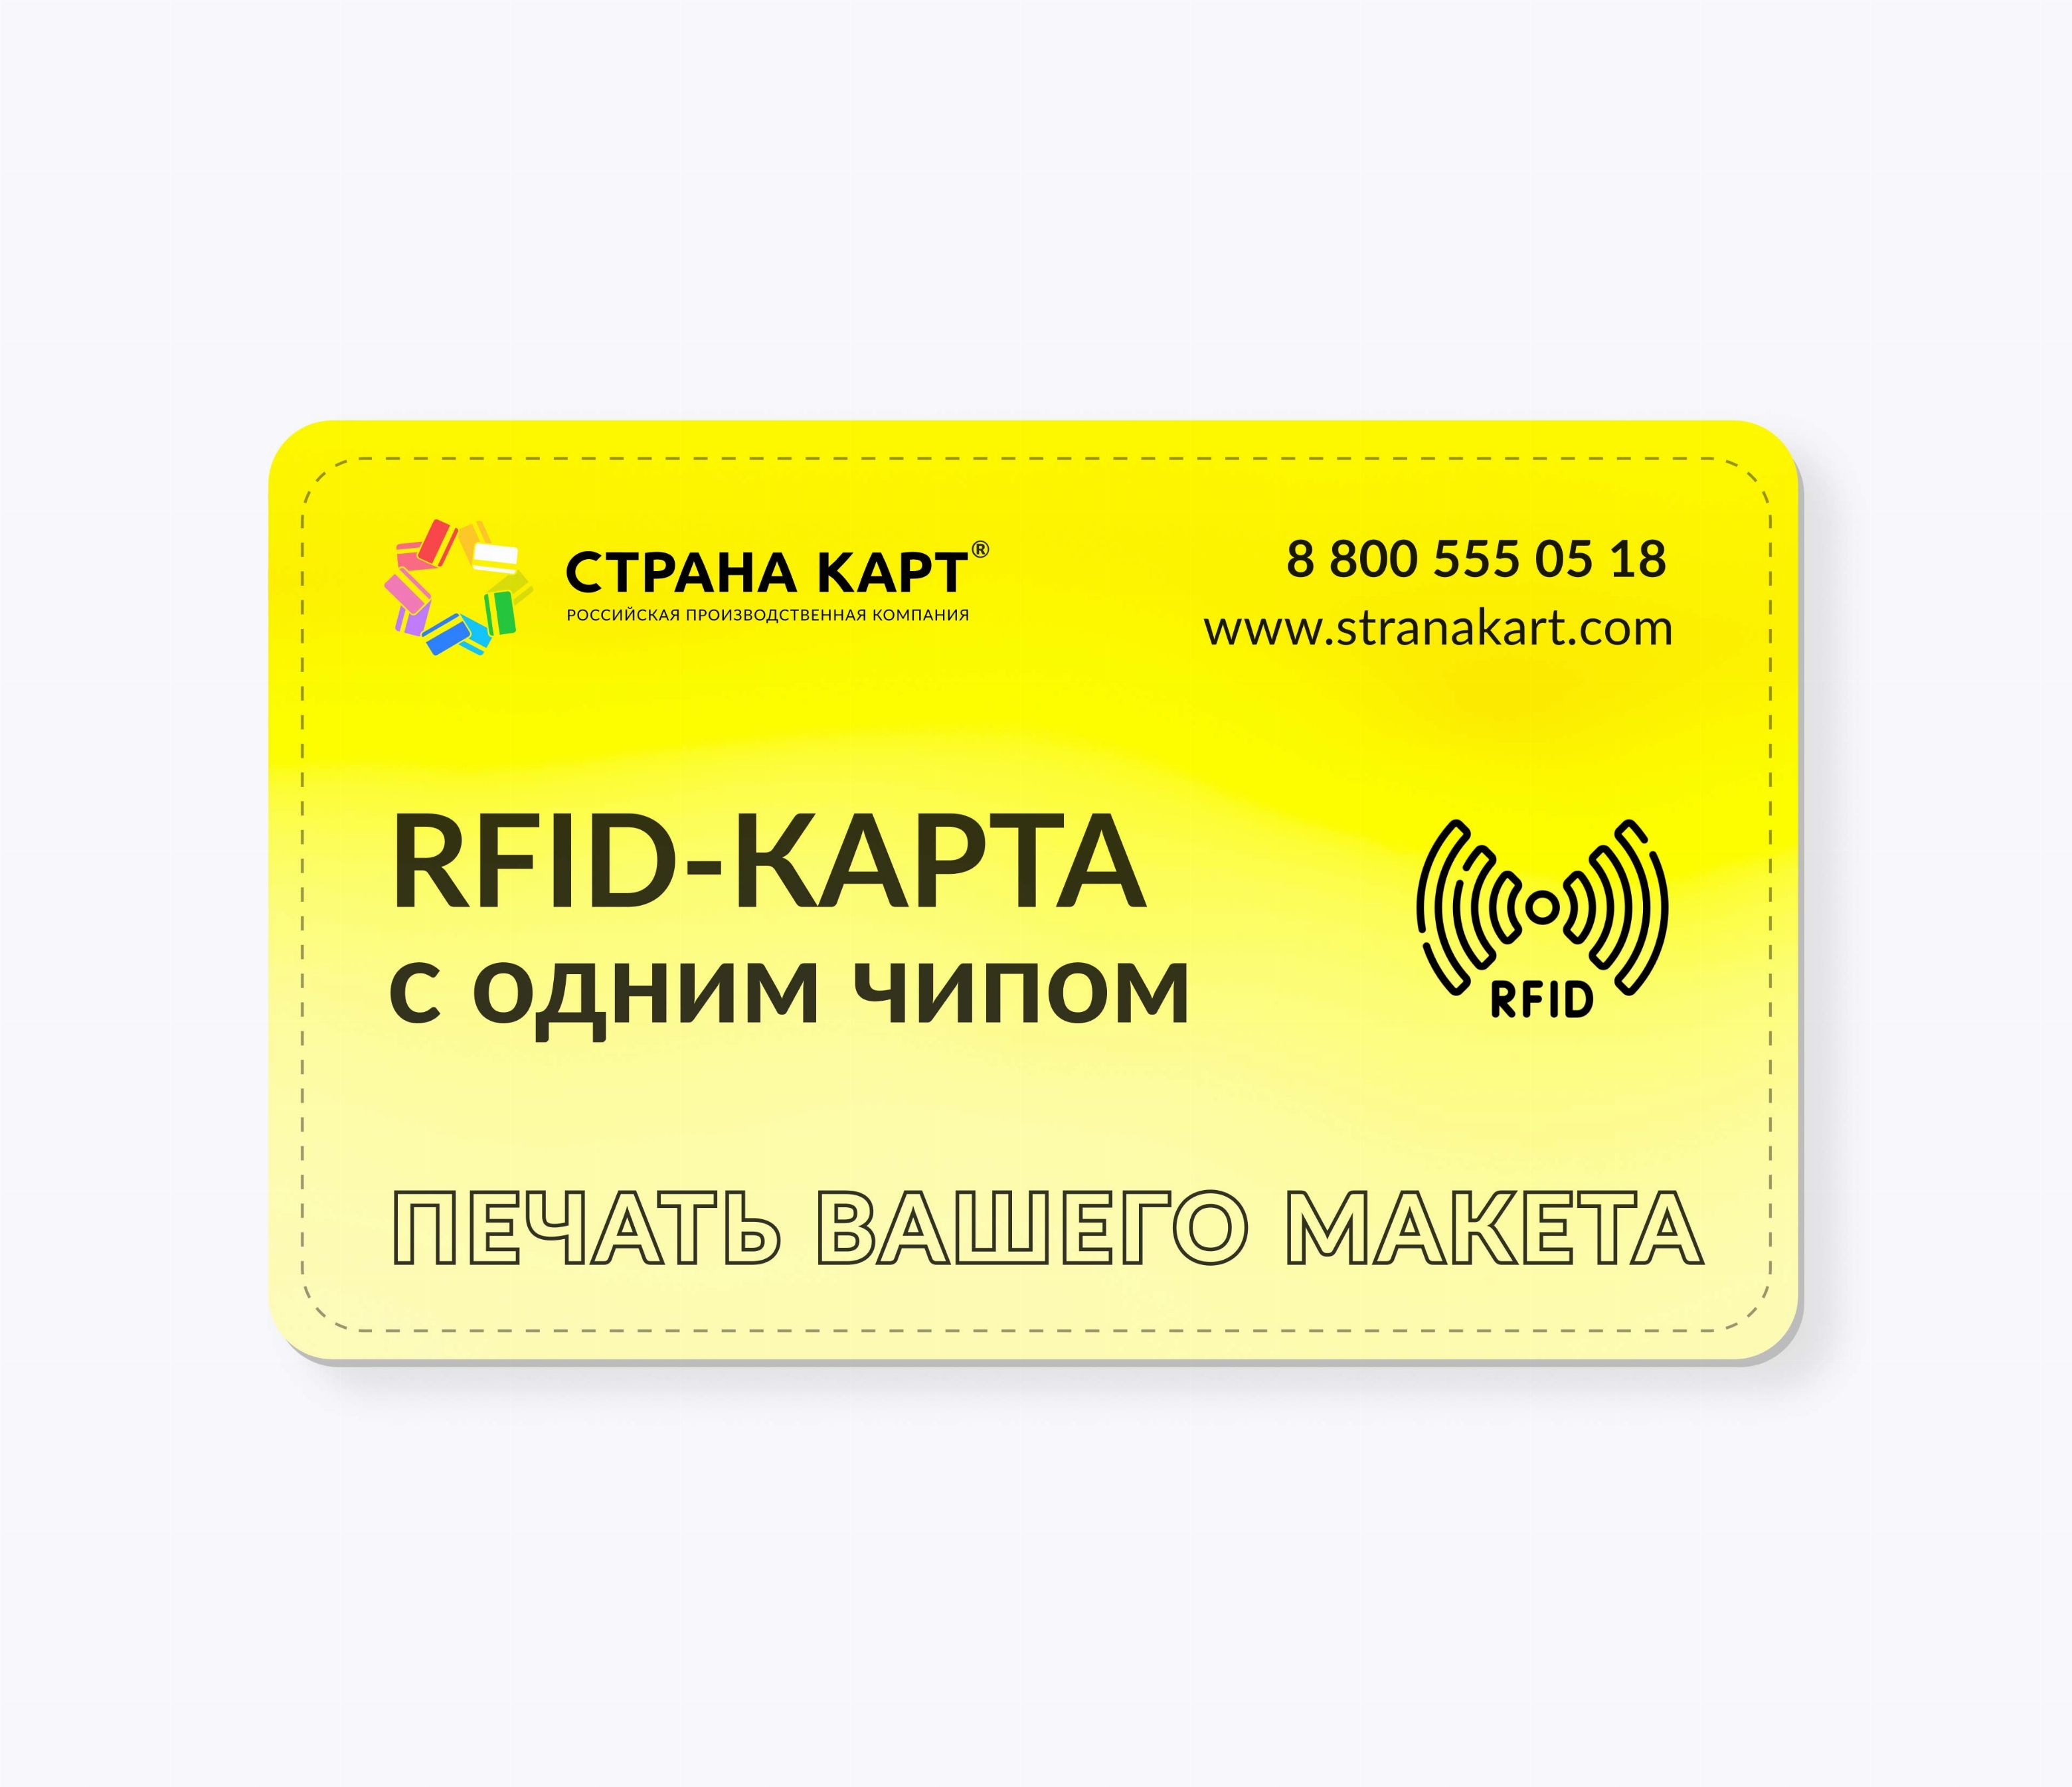 RFID-карты с чипом SMARTTAG® 4k 4 byte nUID печать вашего макета RFID-карты с чипом SMARTTAG® 4k 4 byte nUID